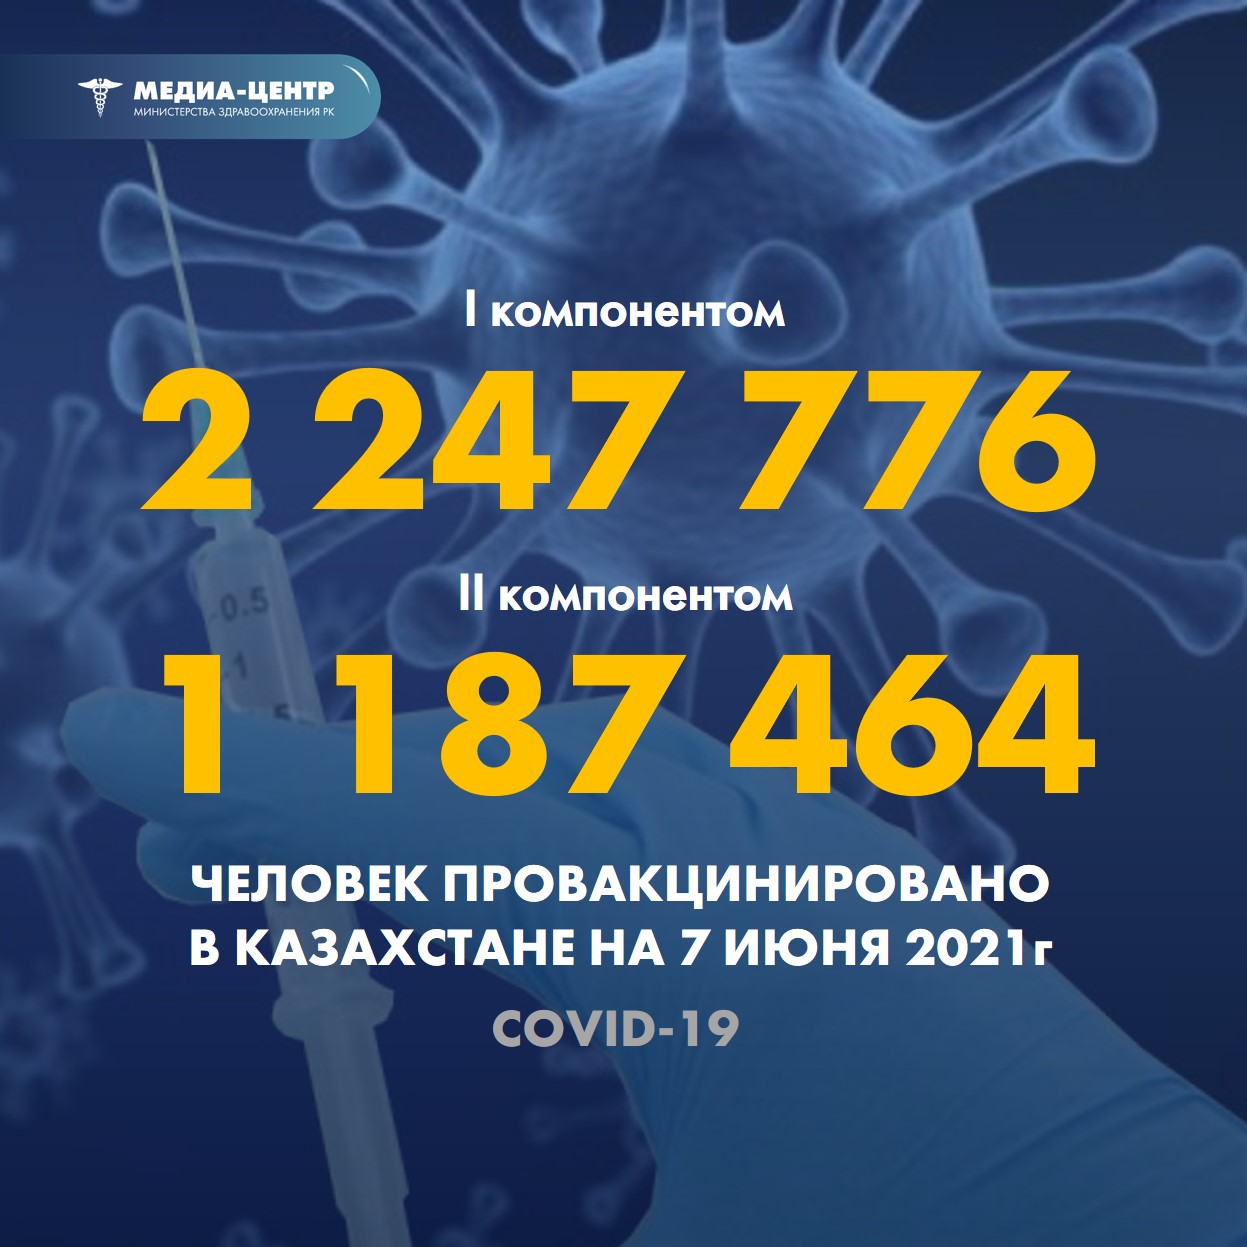 Информация о проведении вакцинации населения против КВИ на 07.06.2021 г. в разрезе регионов